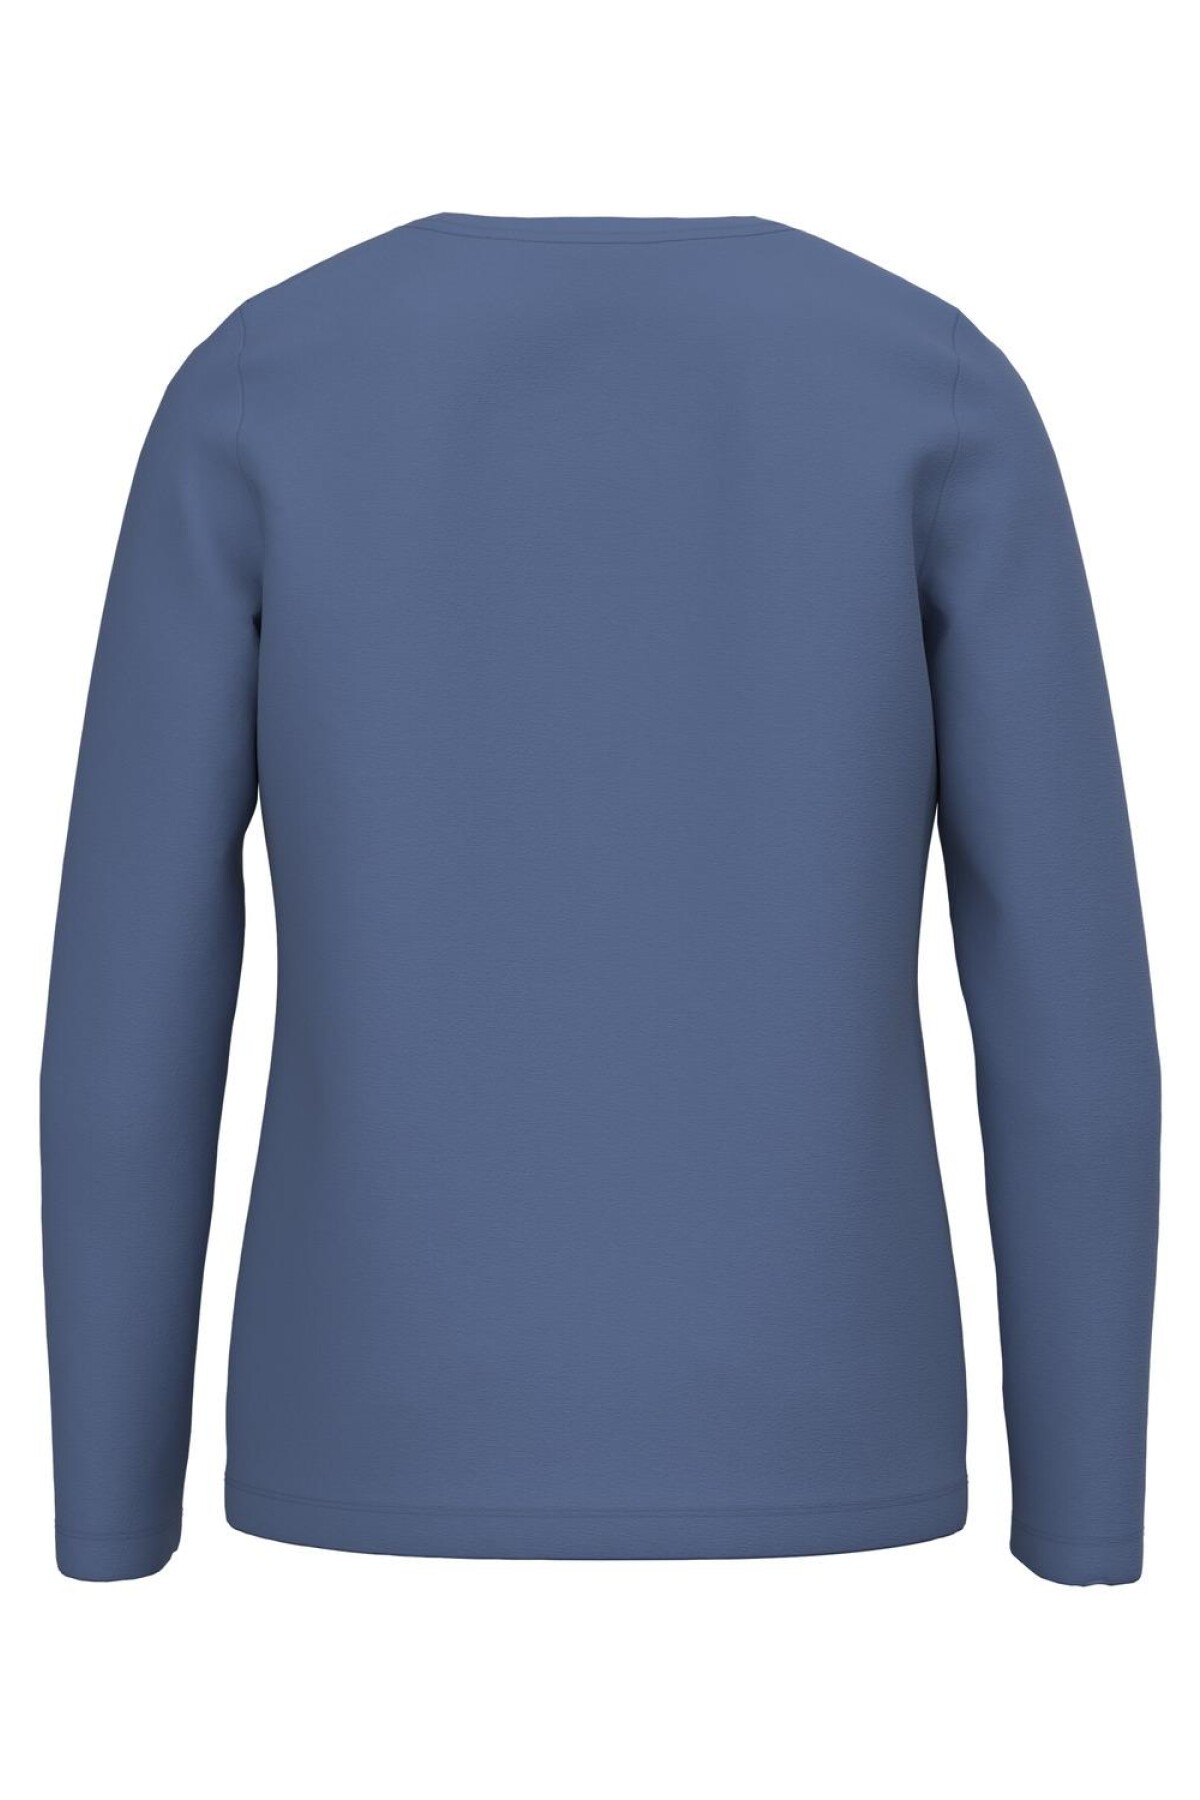 Camiseta Veen Bijou Blue